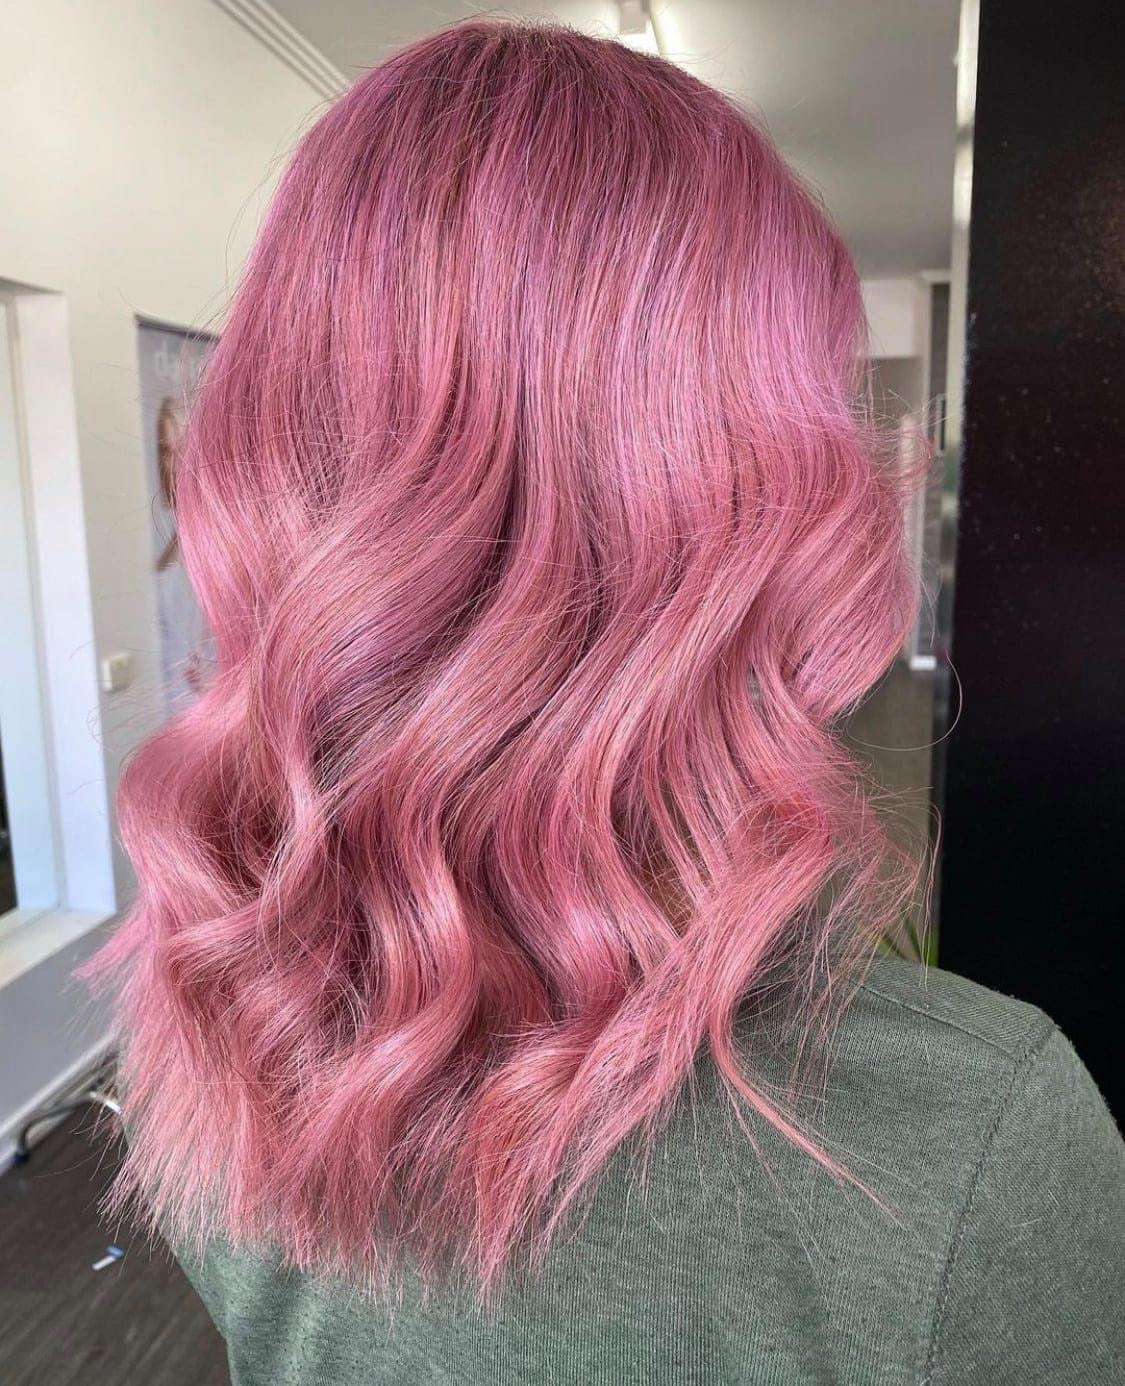 MUVO Ultra Rose Shampoo is een vegan kleurshampoo die je blonde, gekleurde en geblondeerde haar een roze kleur geeft